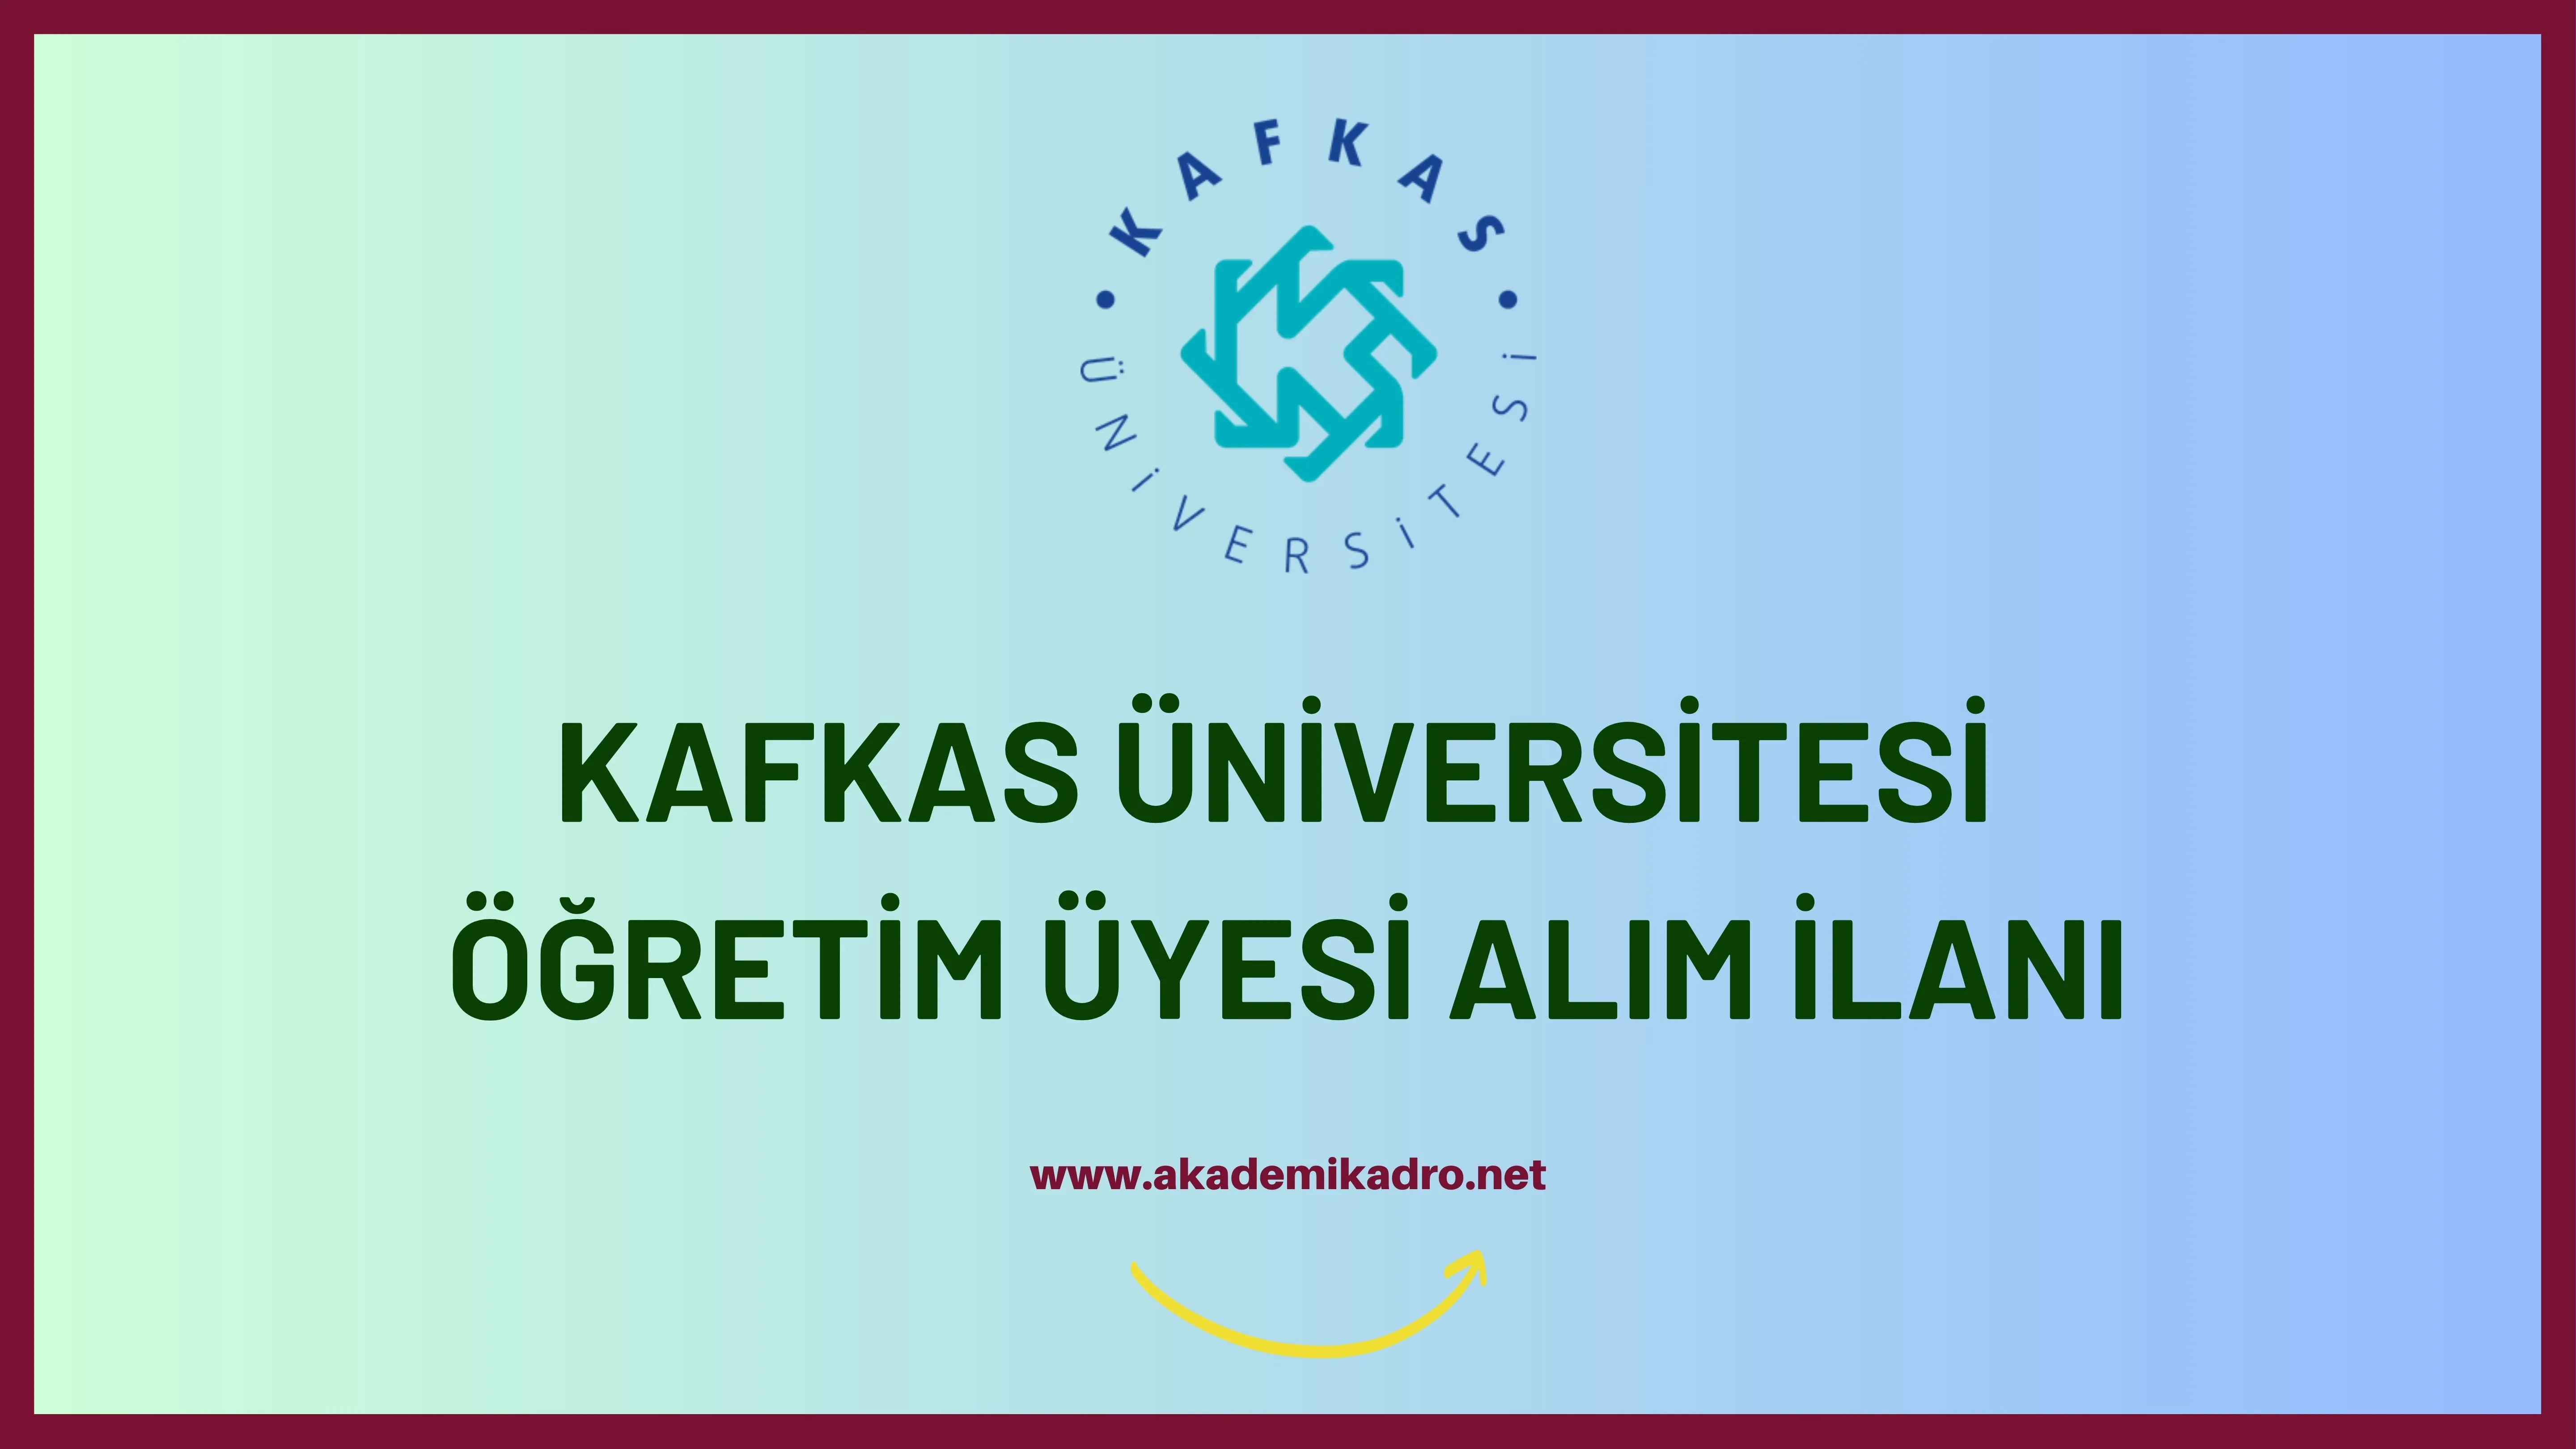 Kafkas Üniversitesi 4 öğretim üyesi alacak.